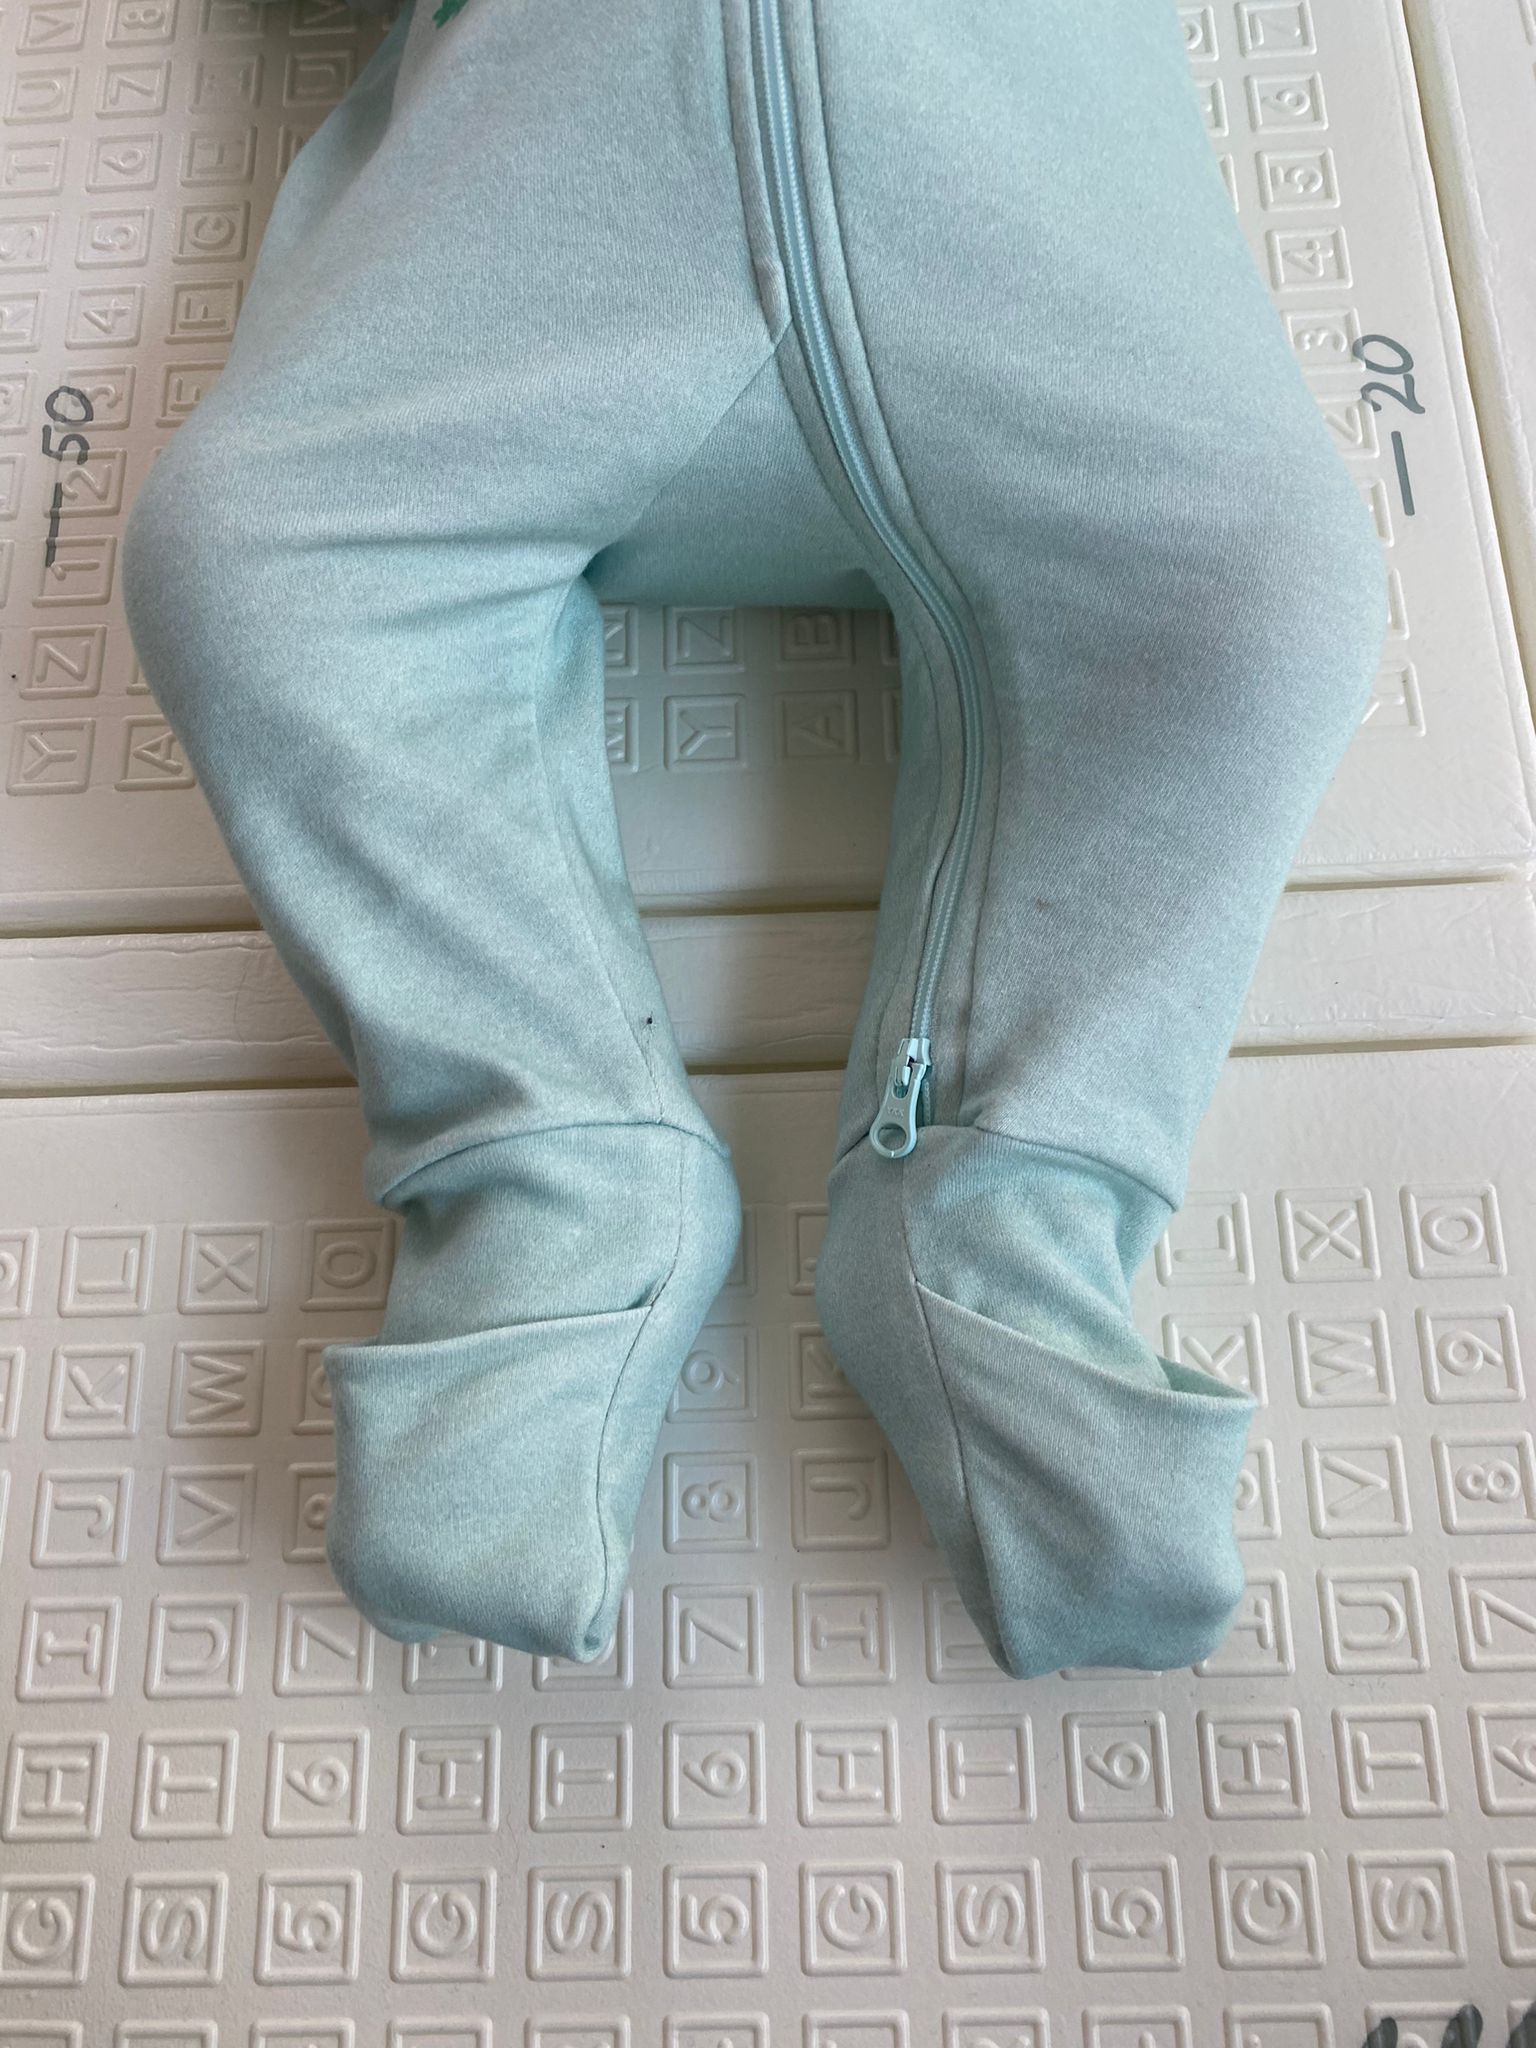 Focus sur les pieds de bébé portant le pyjama avec les chaussettes fermées.